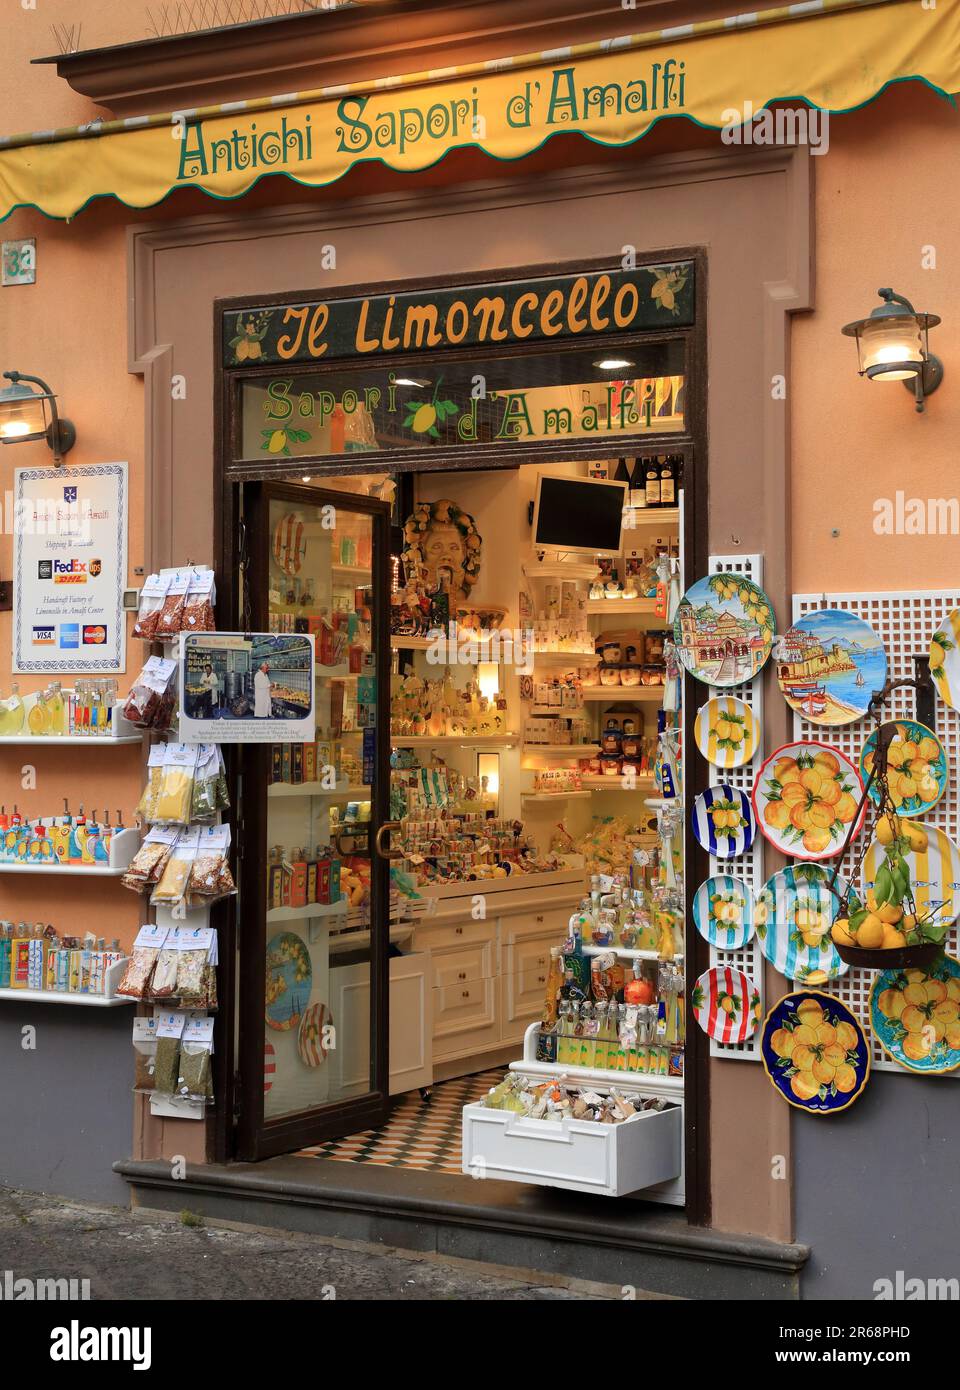 Limoncello souvenir shop Stock Photo